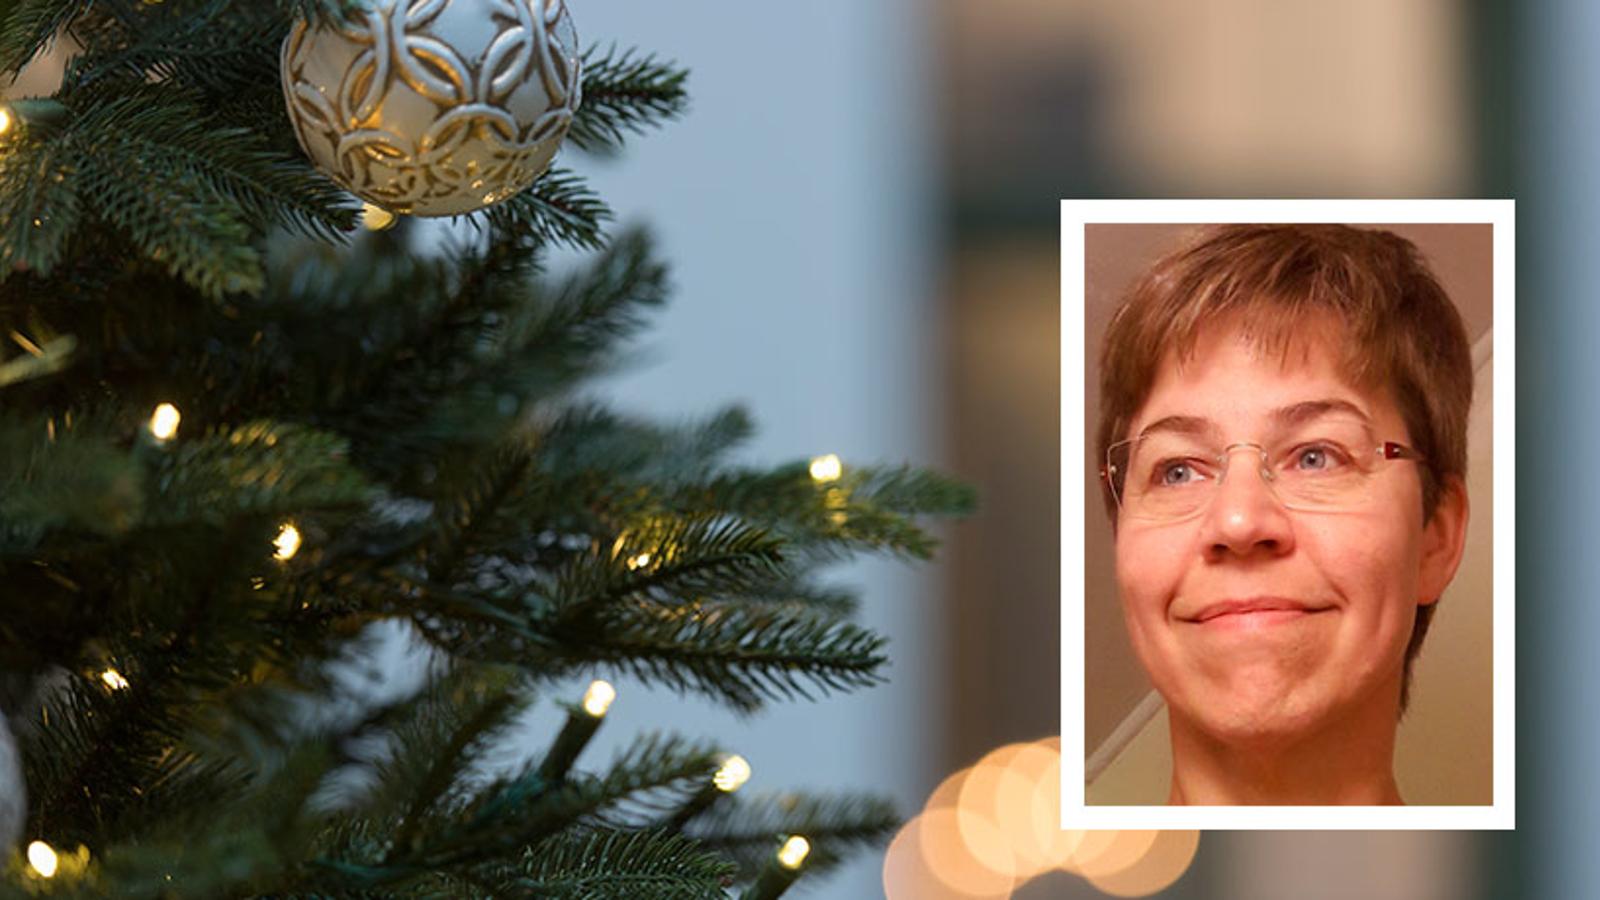 En mindre porträttbild av Ylva Pettersson som är kårledare för Frälsningsarmén i Sundsvall. Bakgrunden består av fokus på en julgranskula i en julgran.